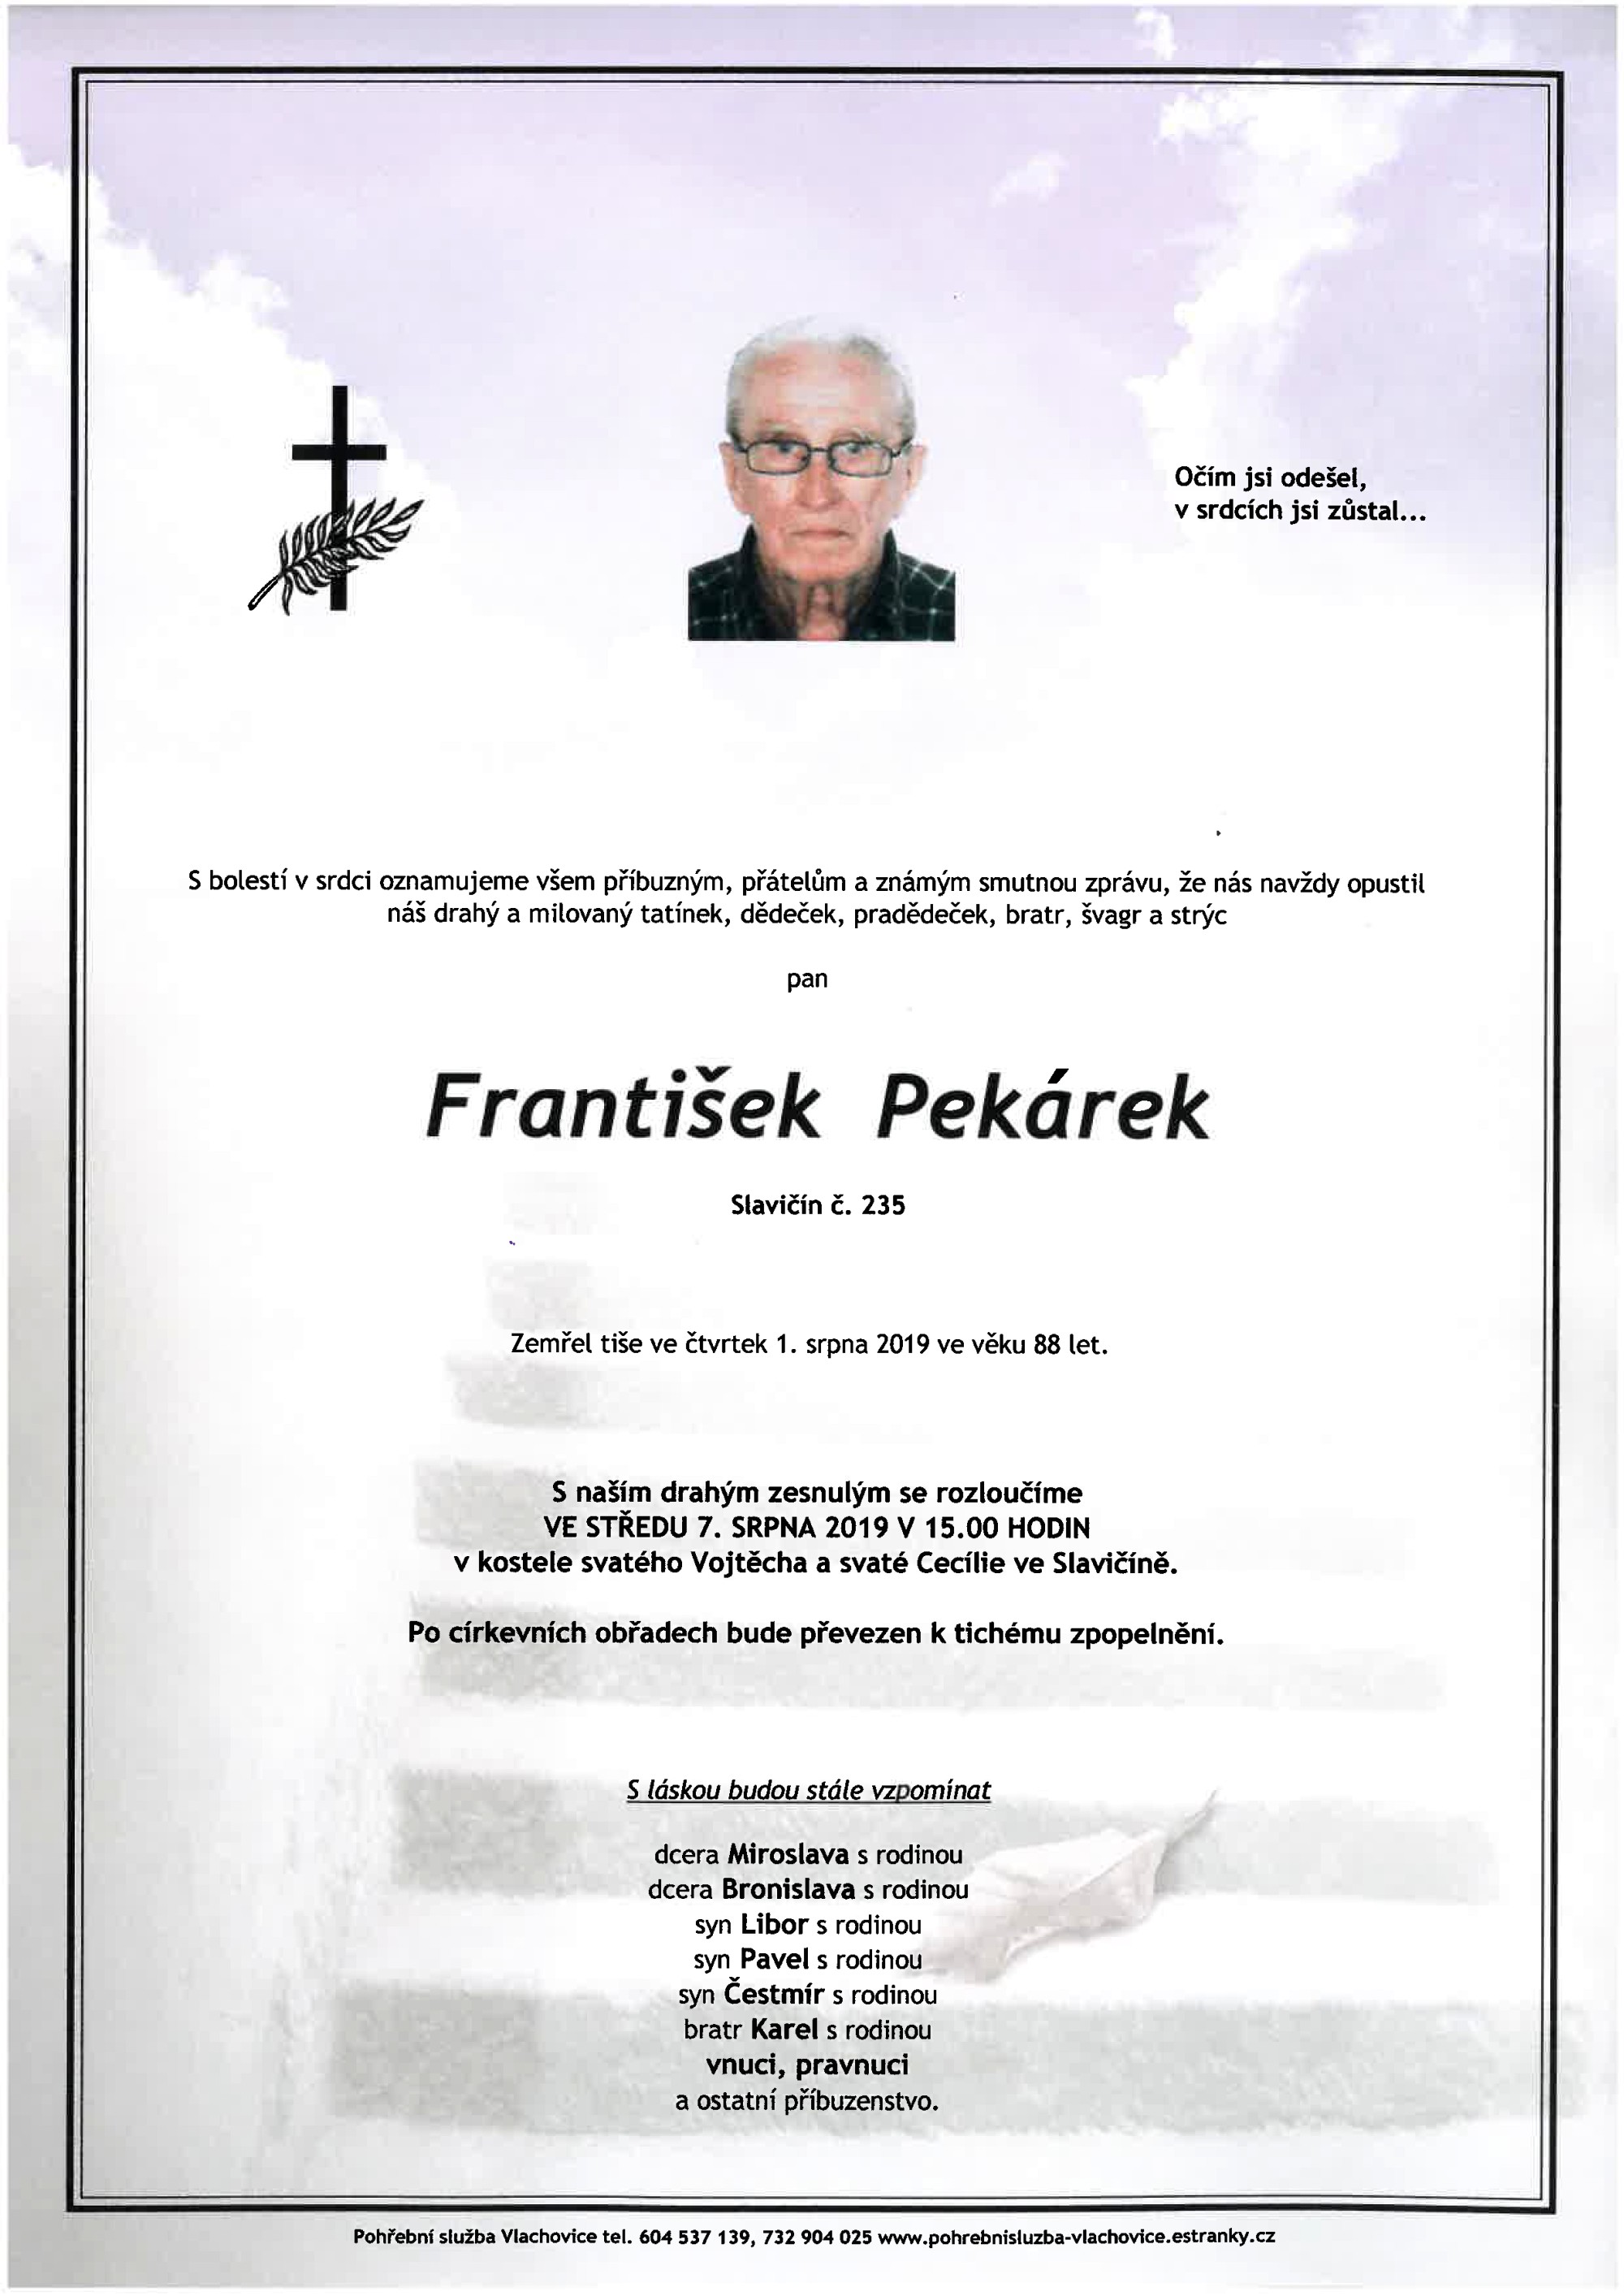 František Pekárek